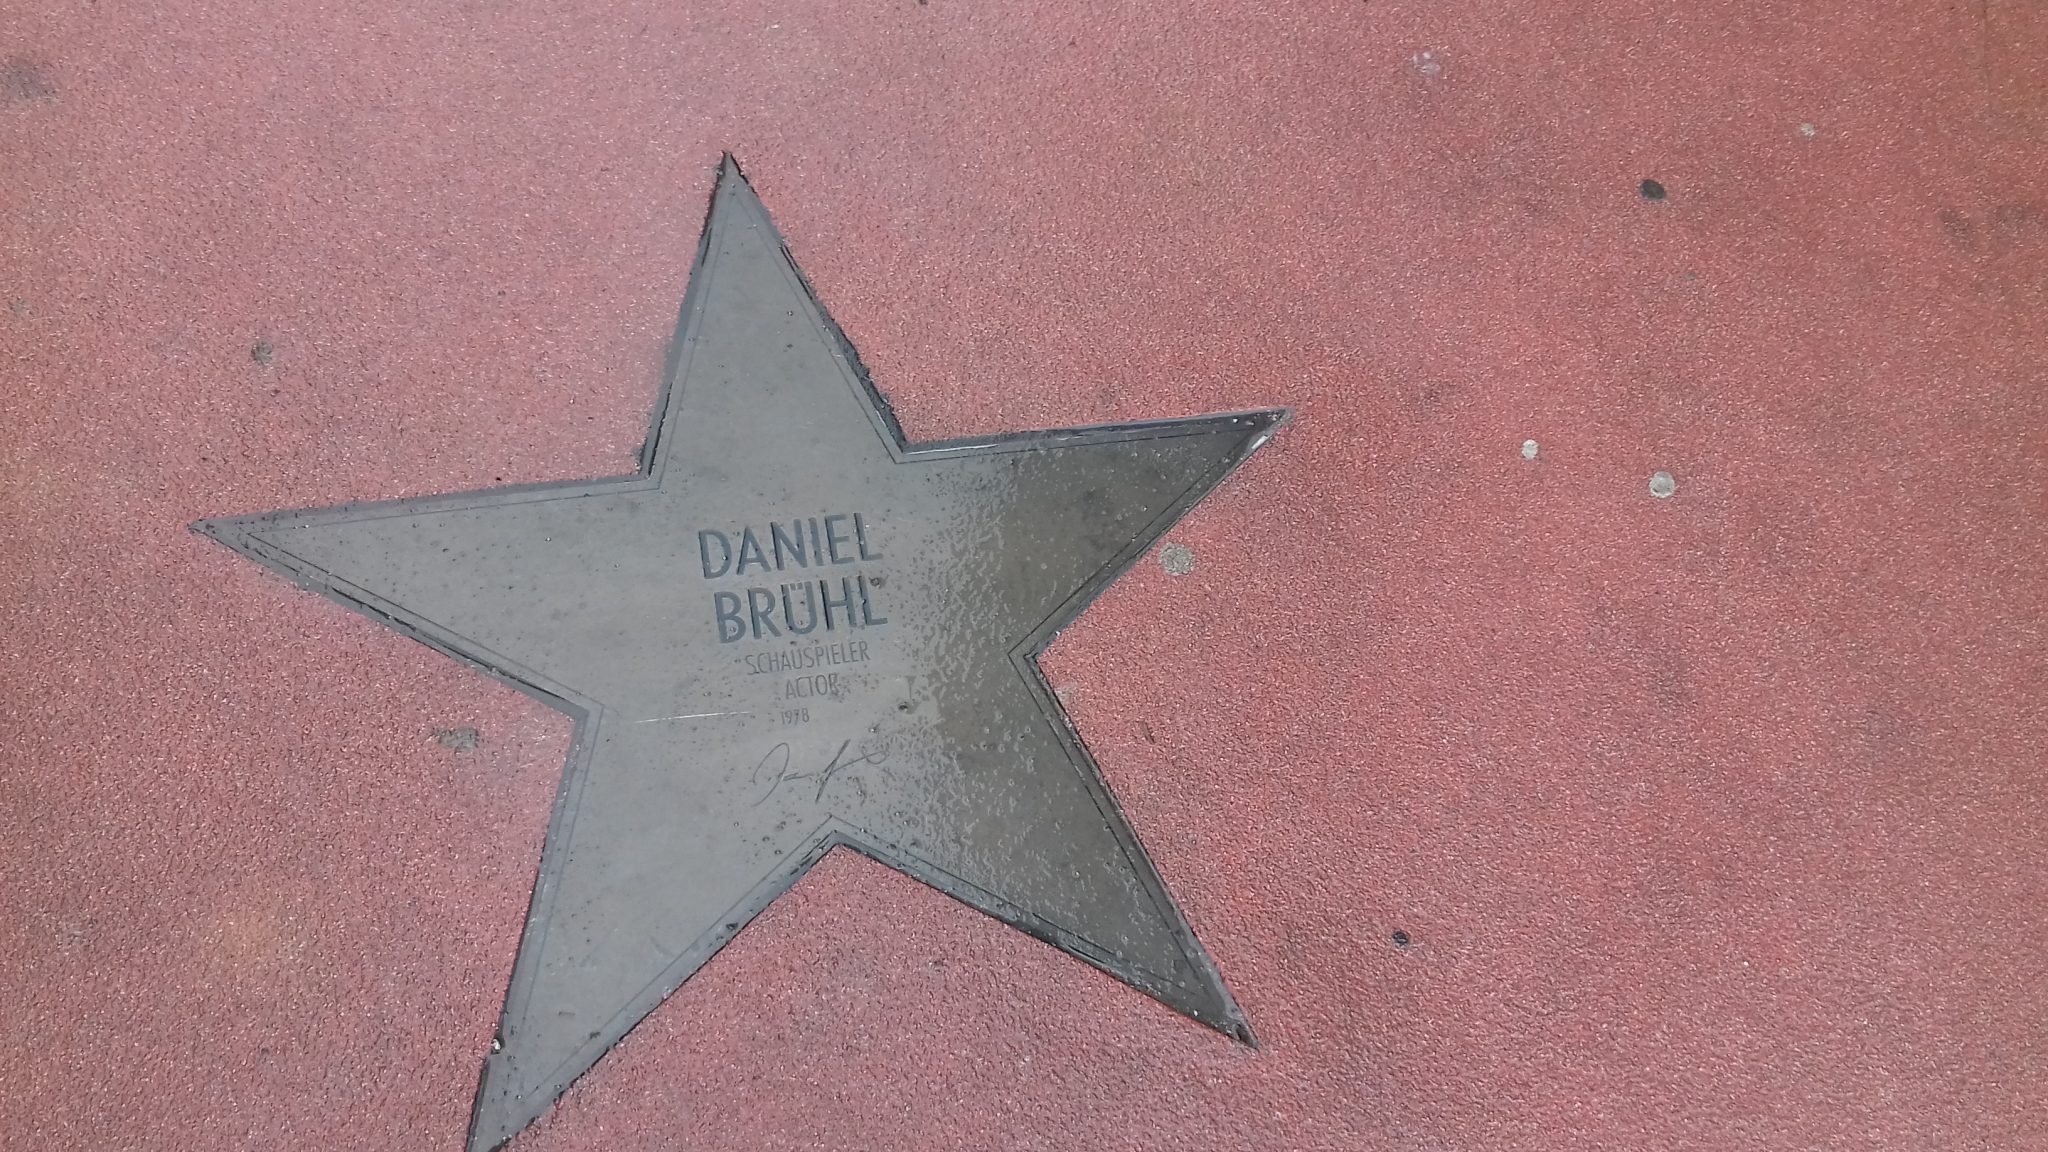 Vokiečių aktoriui Danieliui Brühliui skirta žvaigždė Berlyno žvaigždžių bulvare. Viena iš daugelio.